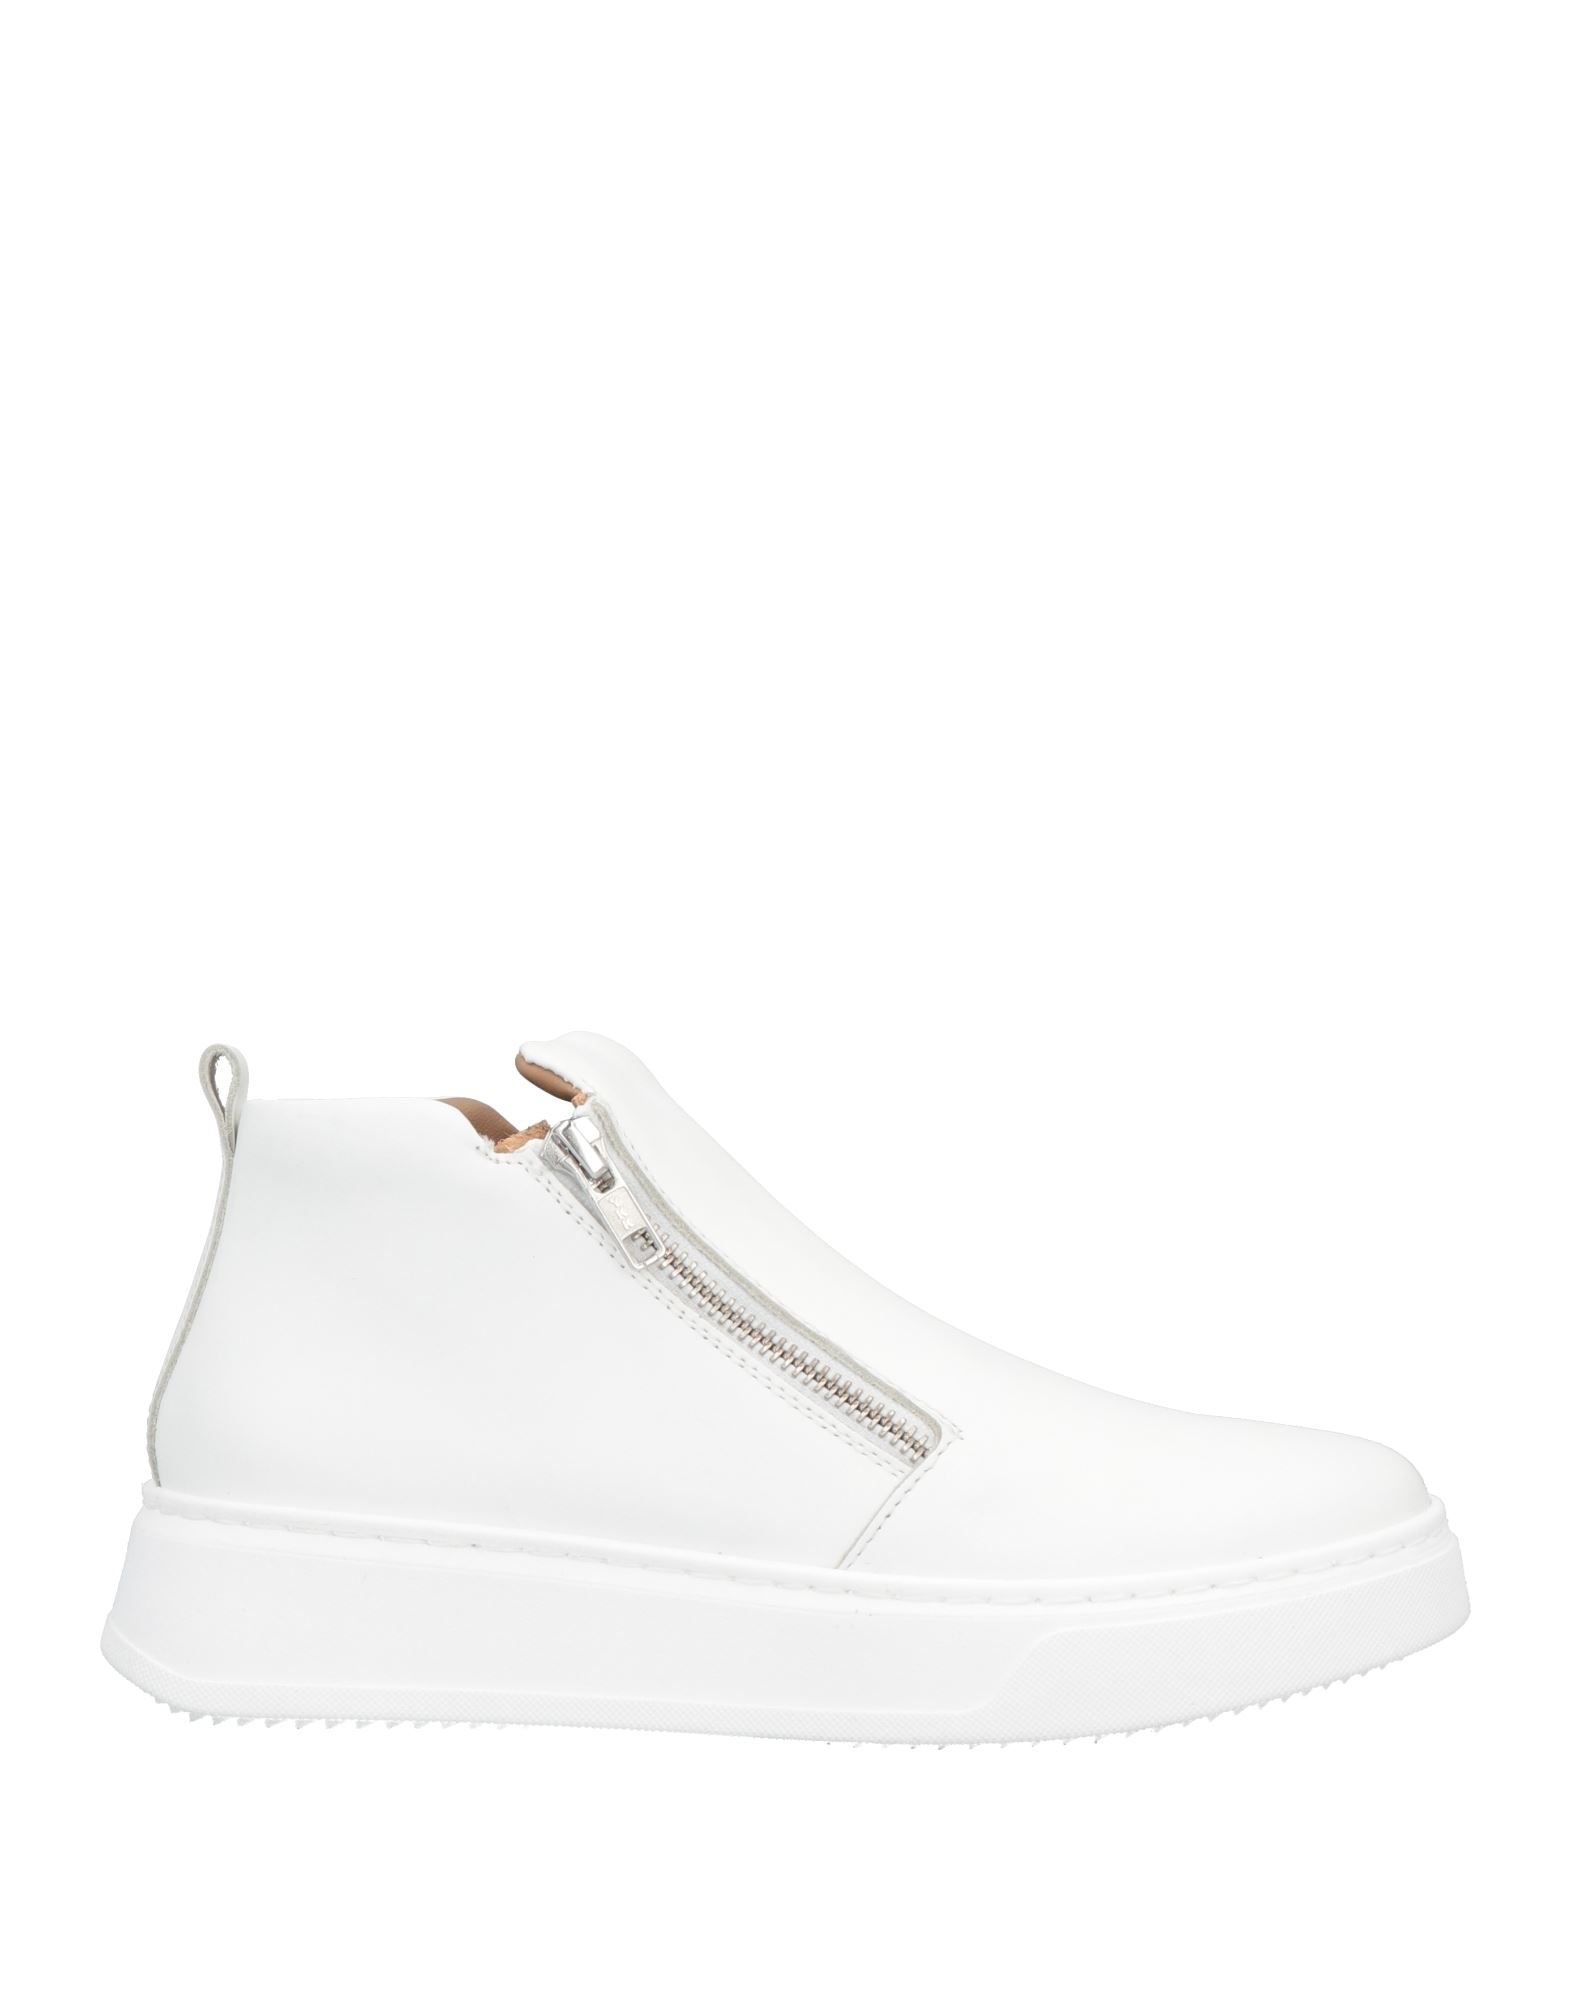 Loretta Pettinari Sneakers In White